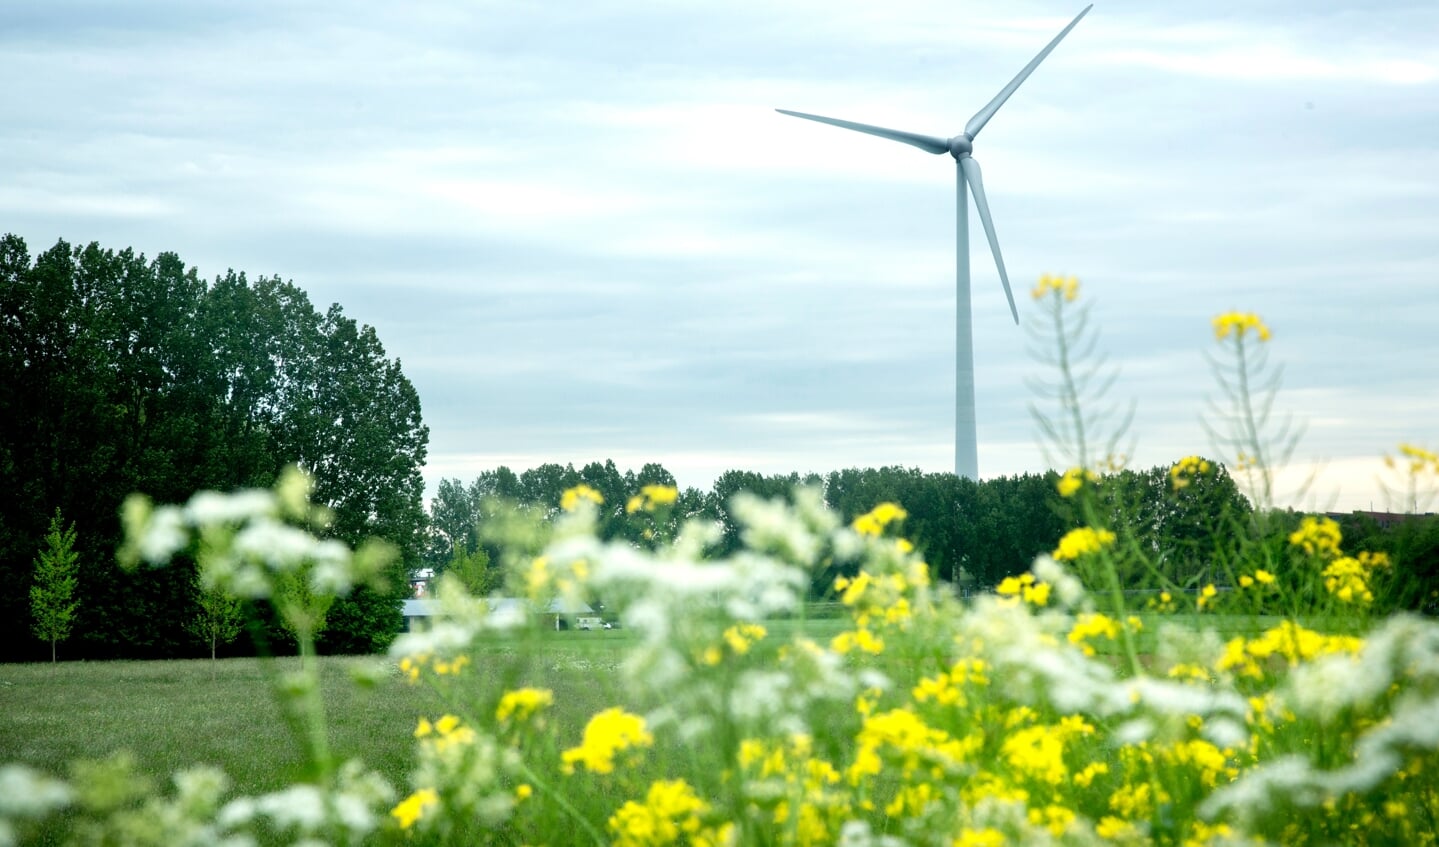 Wethouder Van der Geld (gemeente Den Bosch) benadrukt de noodzaak van de energietransitie naar groenere energie: "De energieprijzen stijgen, dus we hebben haast. Den Bosch wil in 2045 klimaatneutraal zijn".